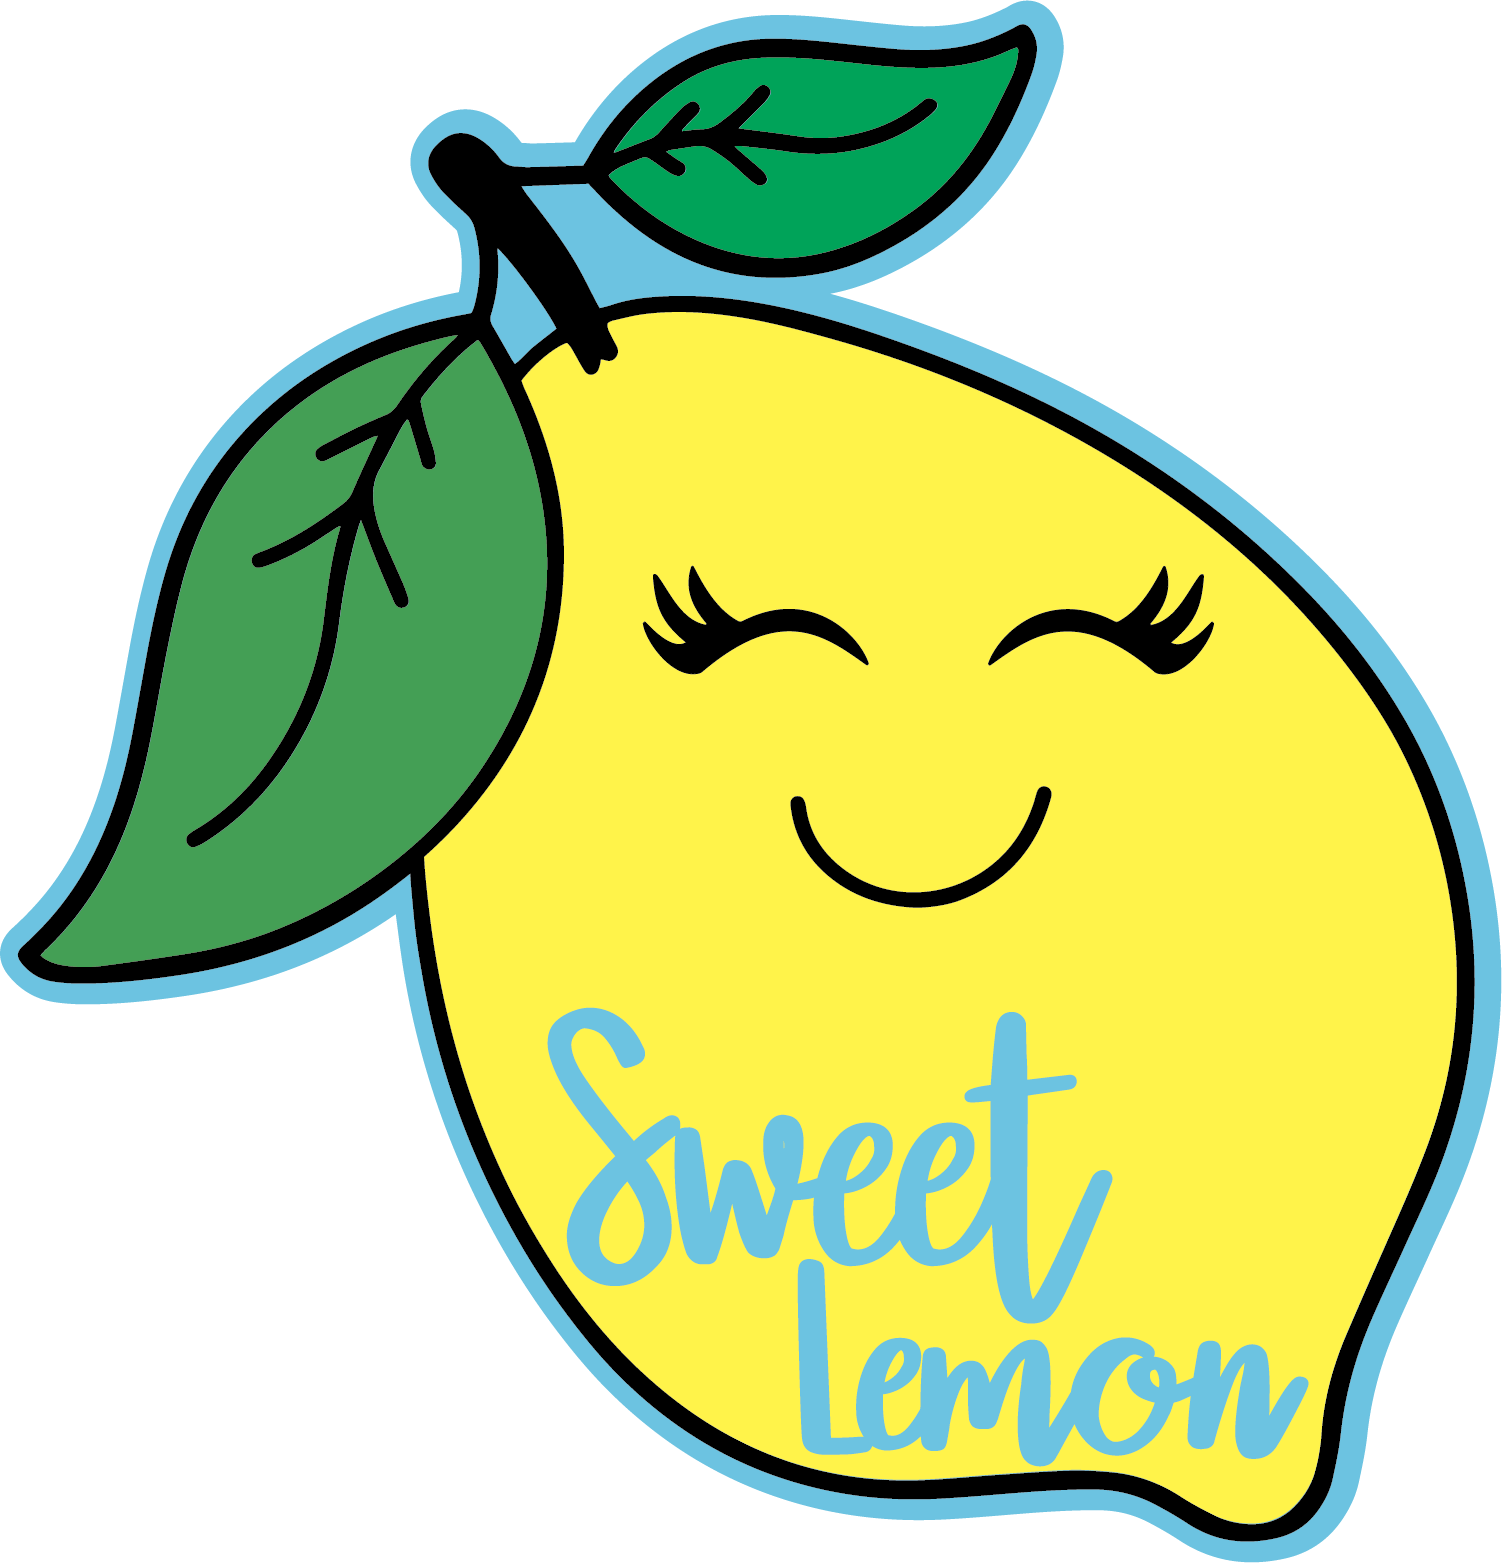 Sweet Lemon